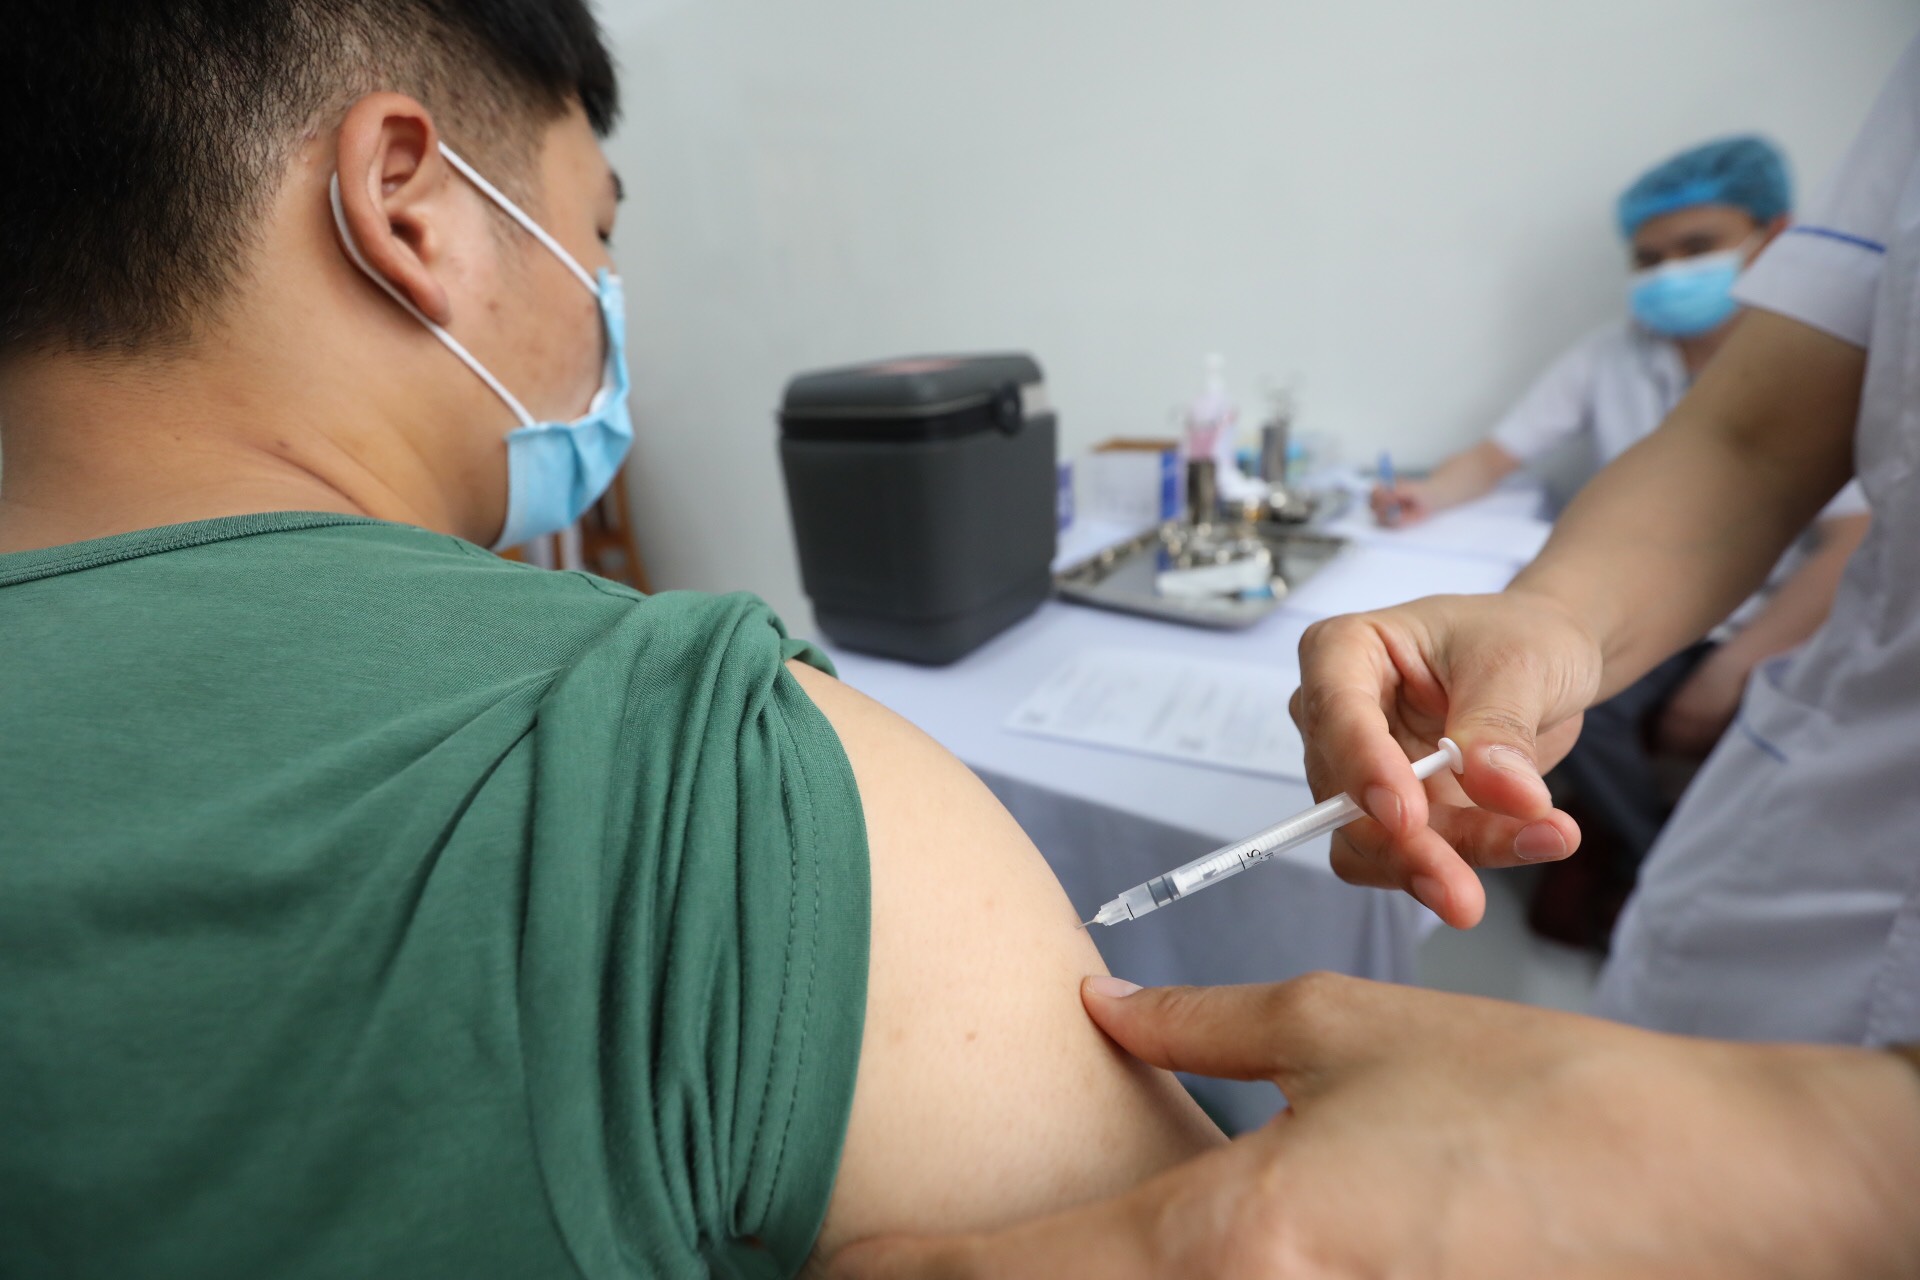 Cập nhật mới nhất tiến độ thử nghiệm vắc xin phòng COVID-19 đầu tiên của Việt Nam Nano Covax - Ảnh 1.